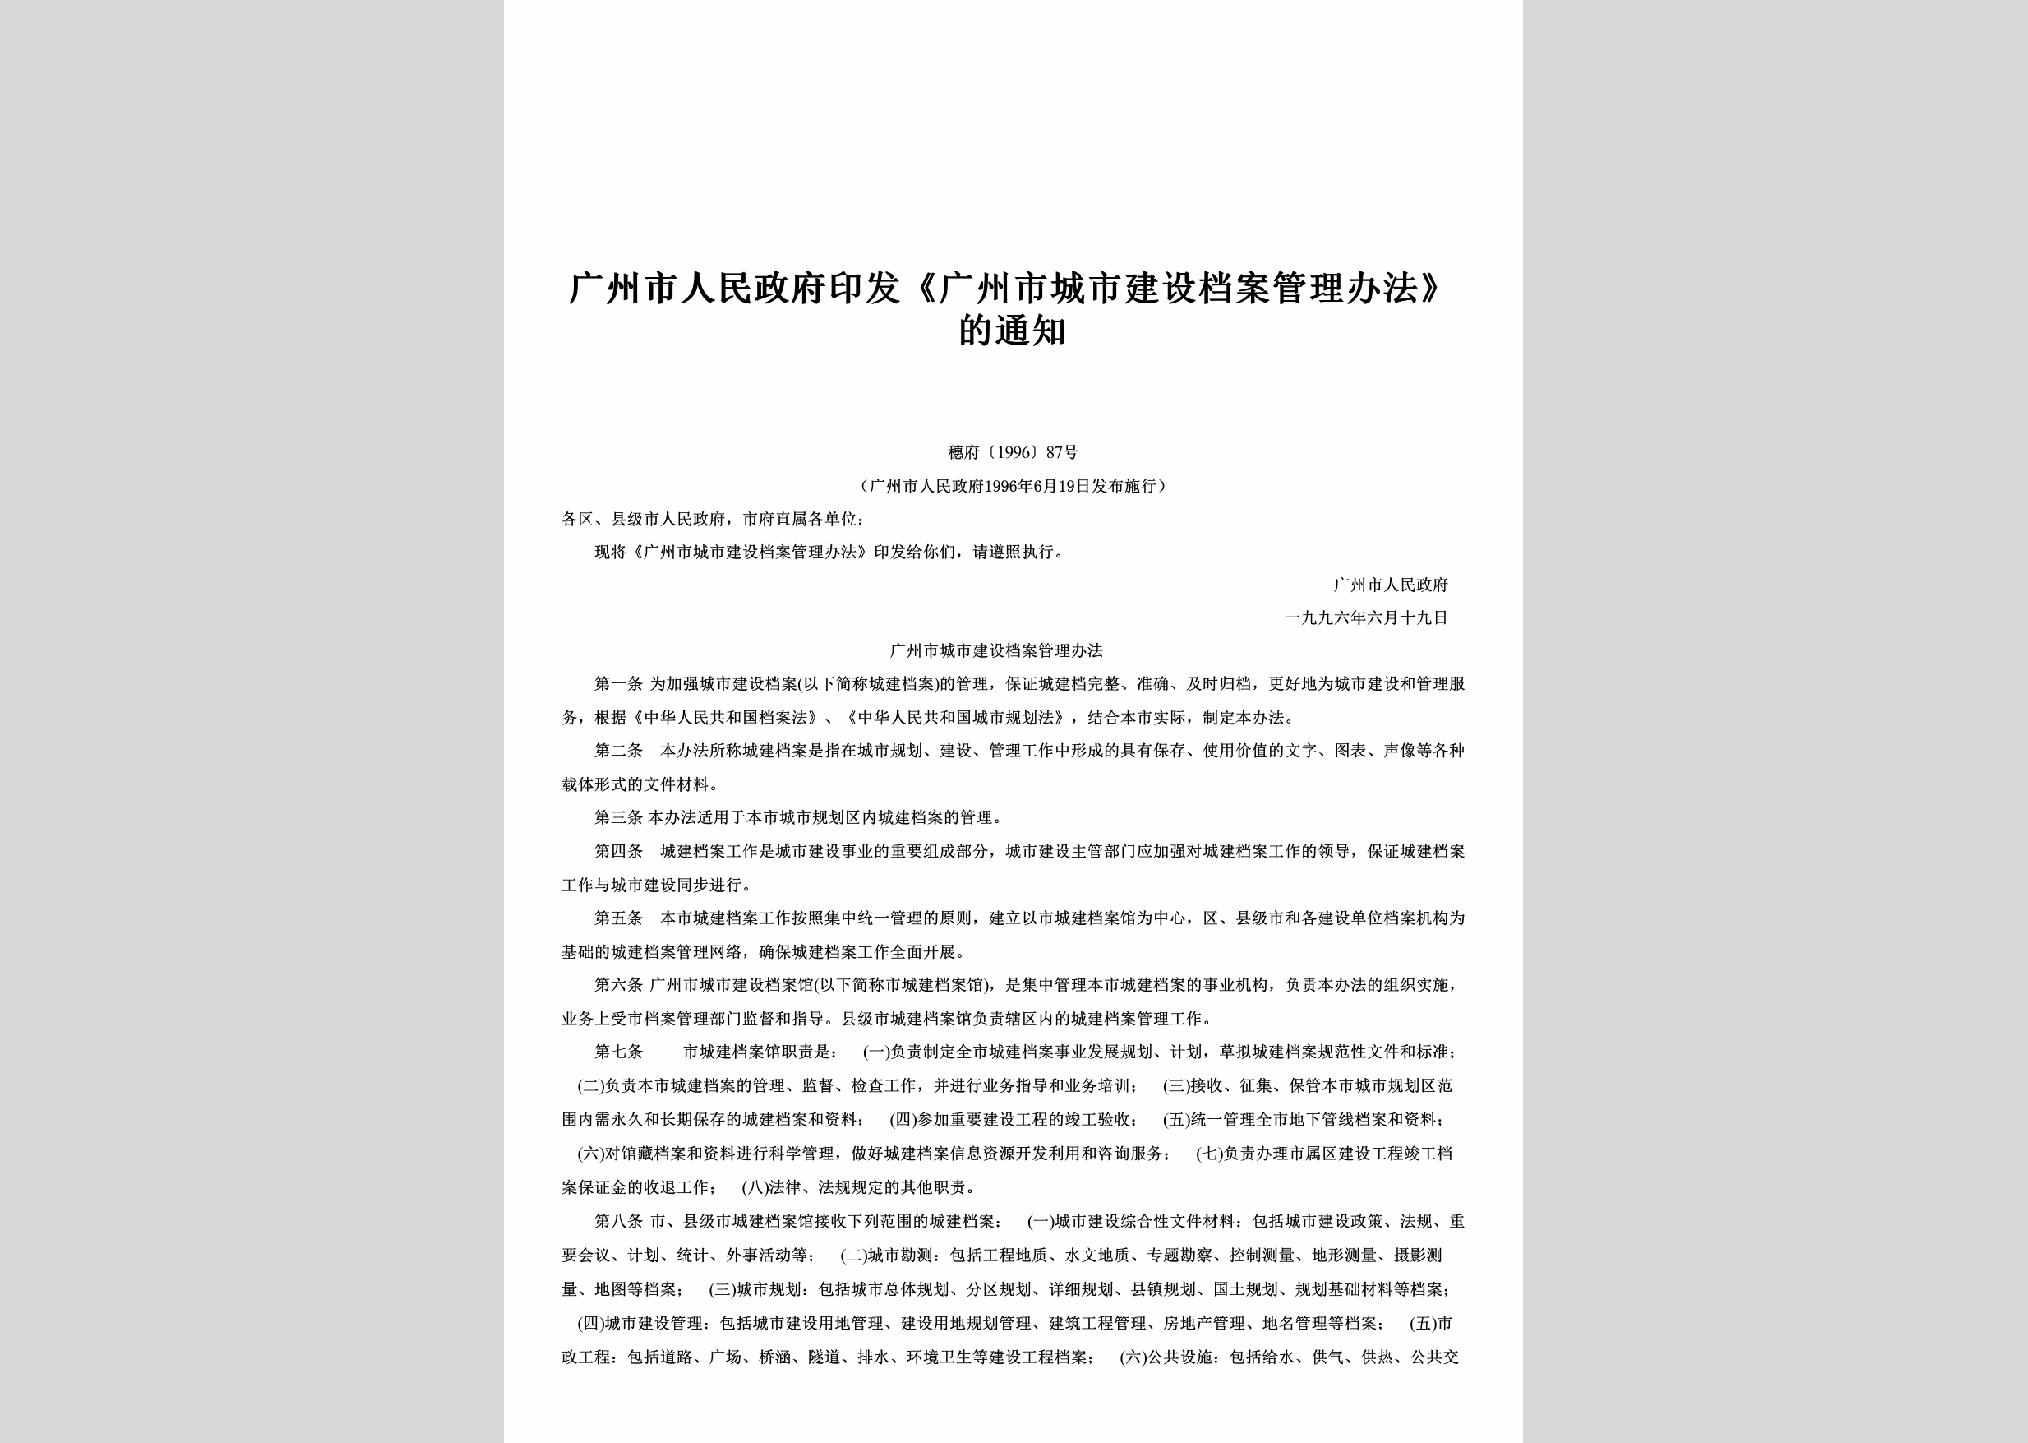 穗府[1996]87号：印发《广州市城市建设档案管理办法》的通知